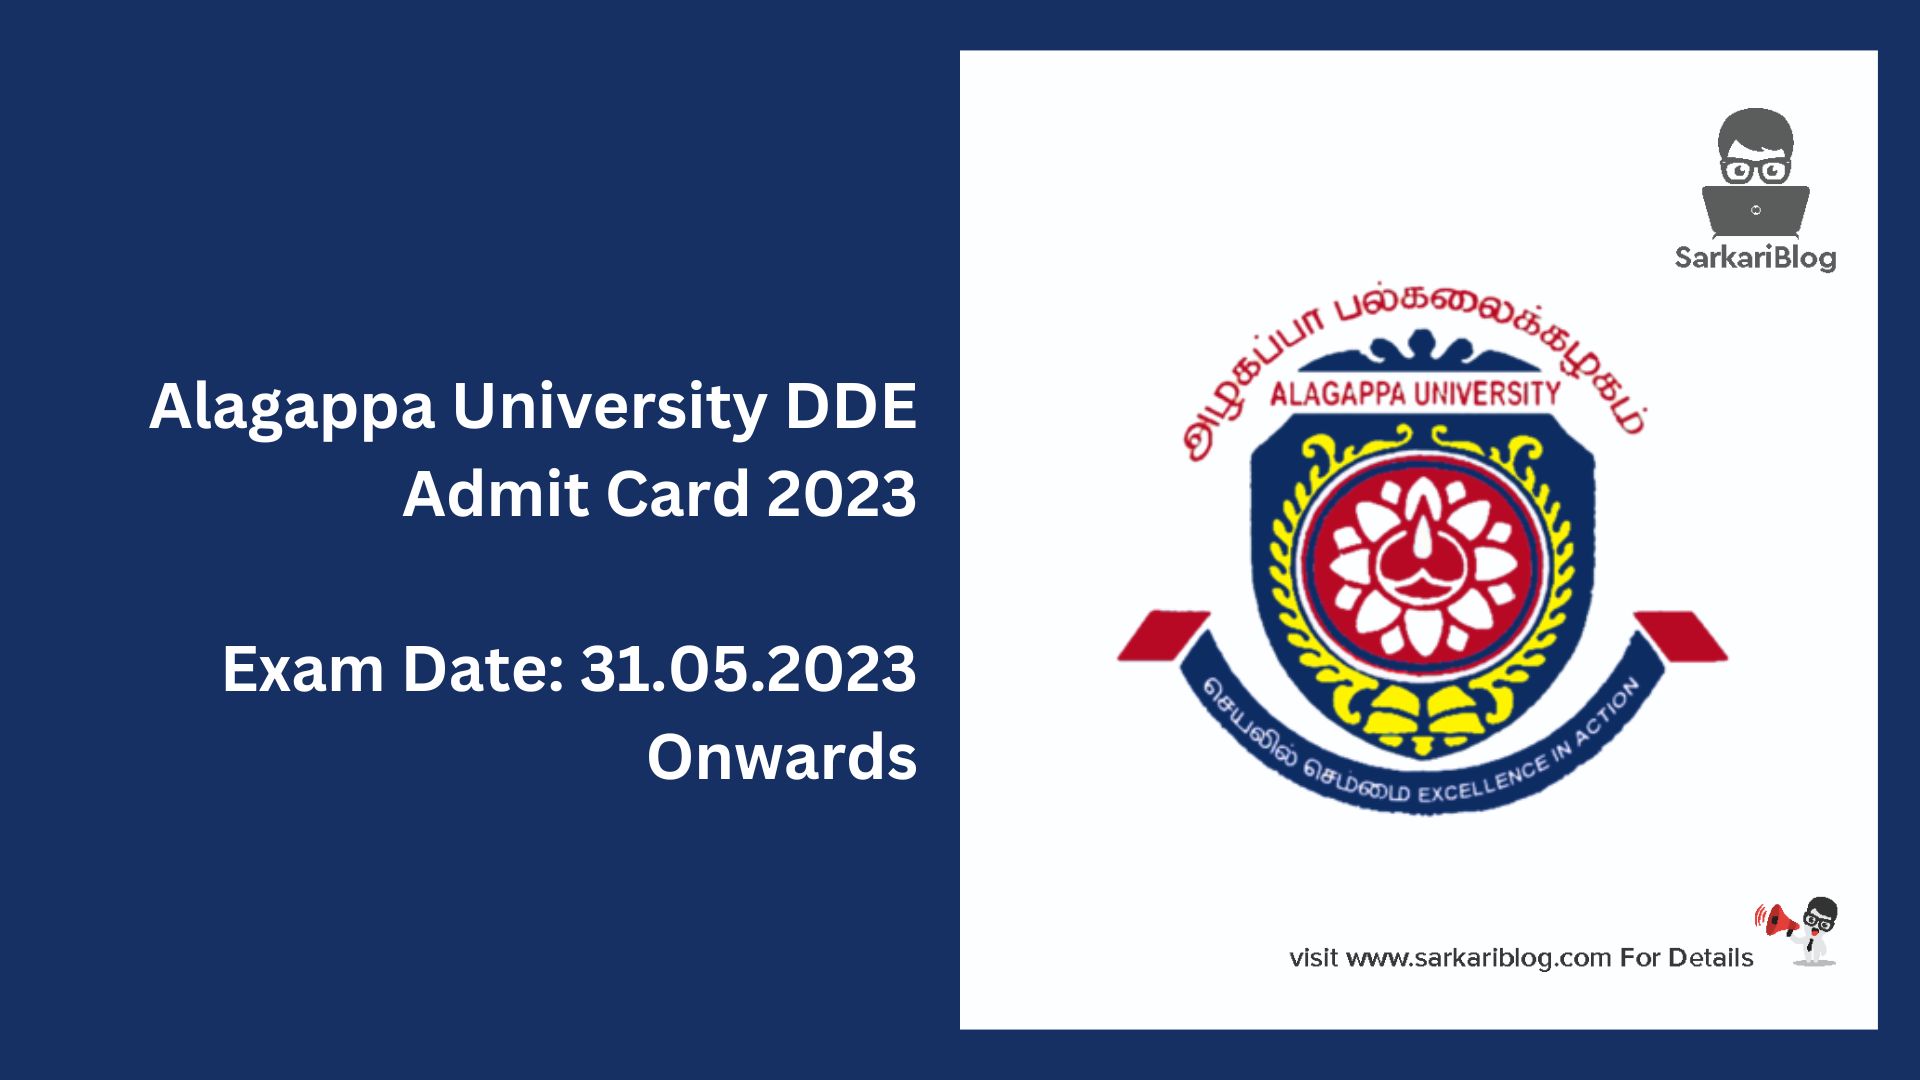 Alagappa University DDE Admit Card 2023